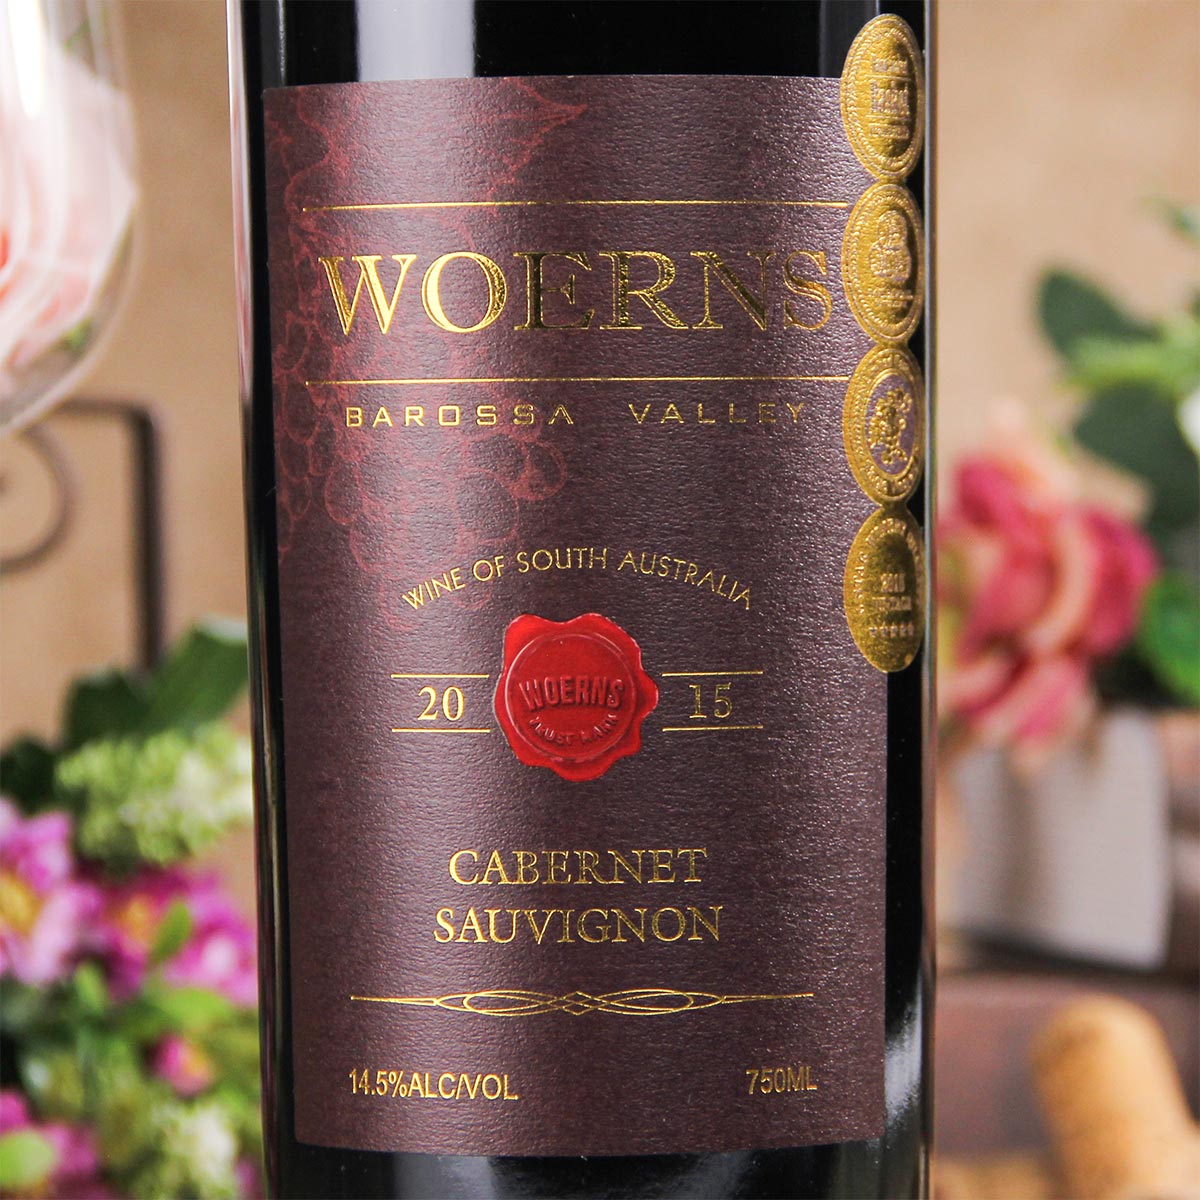 澳大利亚巴罗萨谷沃恩斯60年老藤赤霞珠红葡萄酒